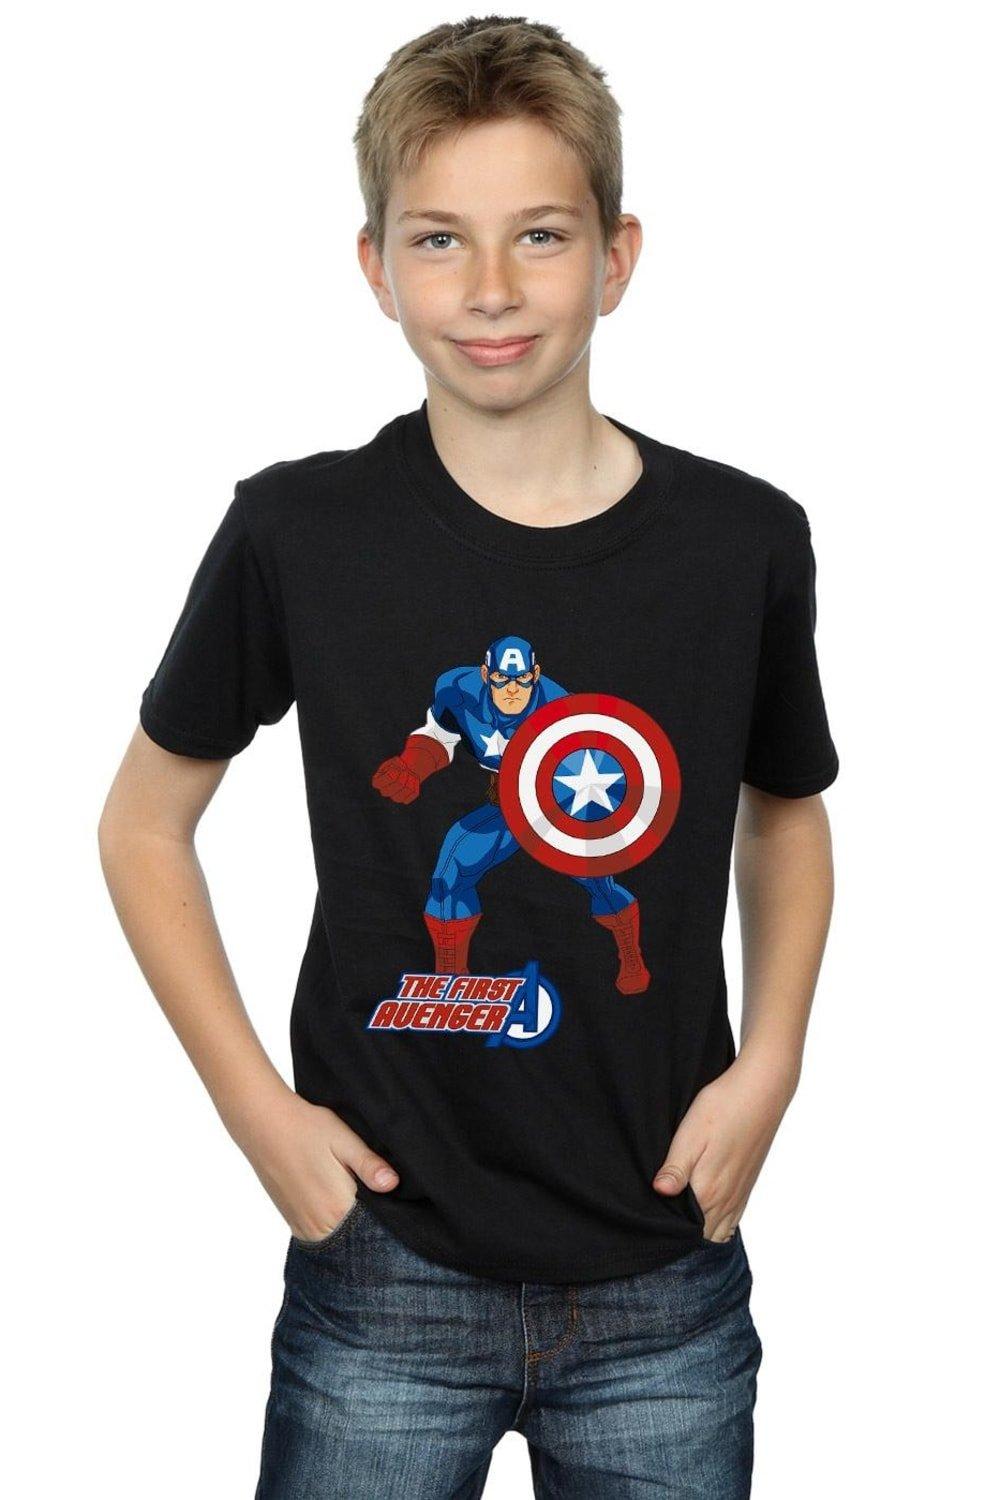 The First Avenger T-Shirt